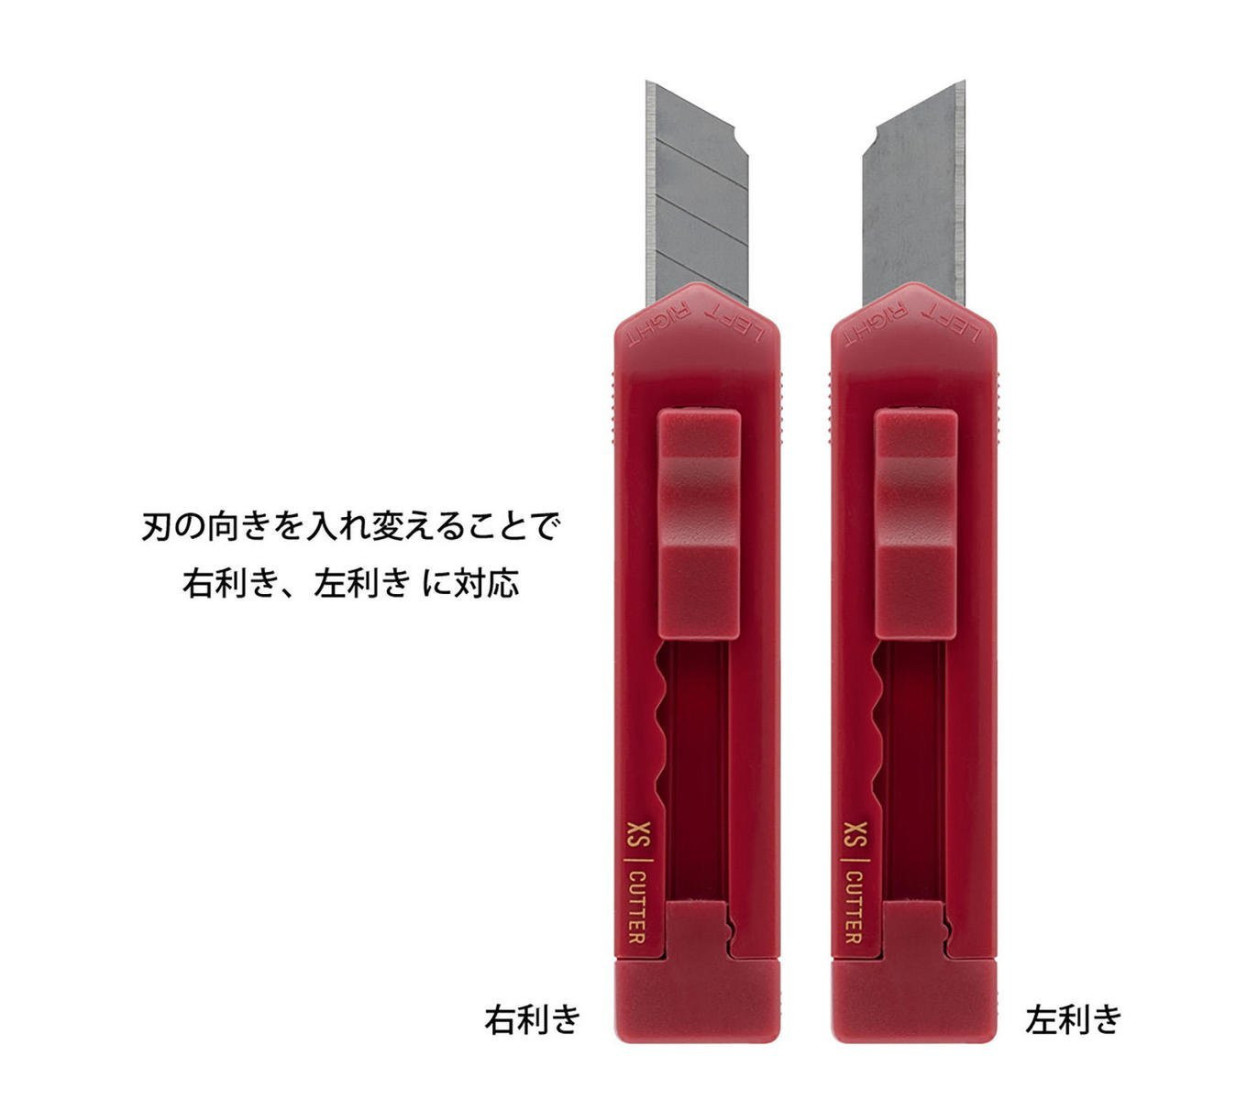 Midori XS (extra small) Cutter Dark Red 35528006